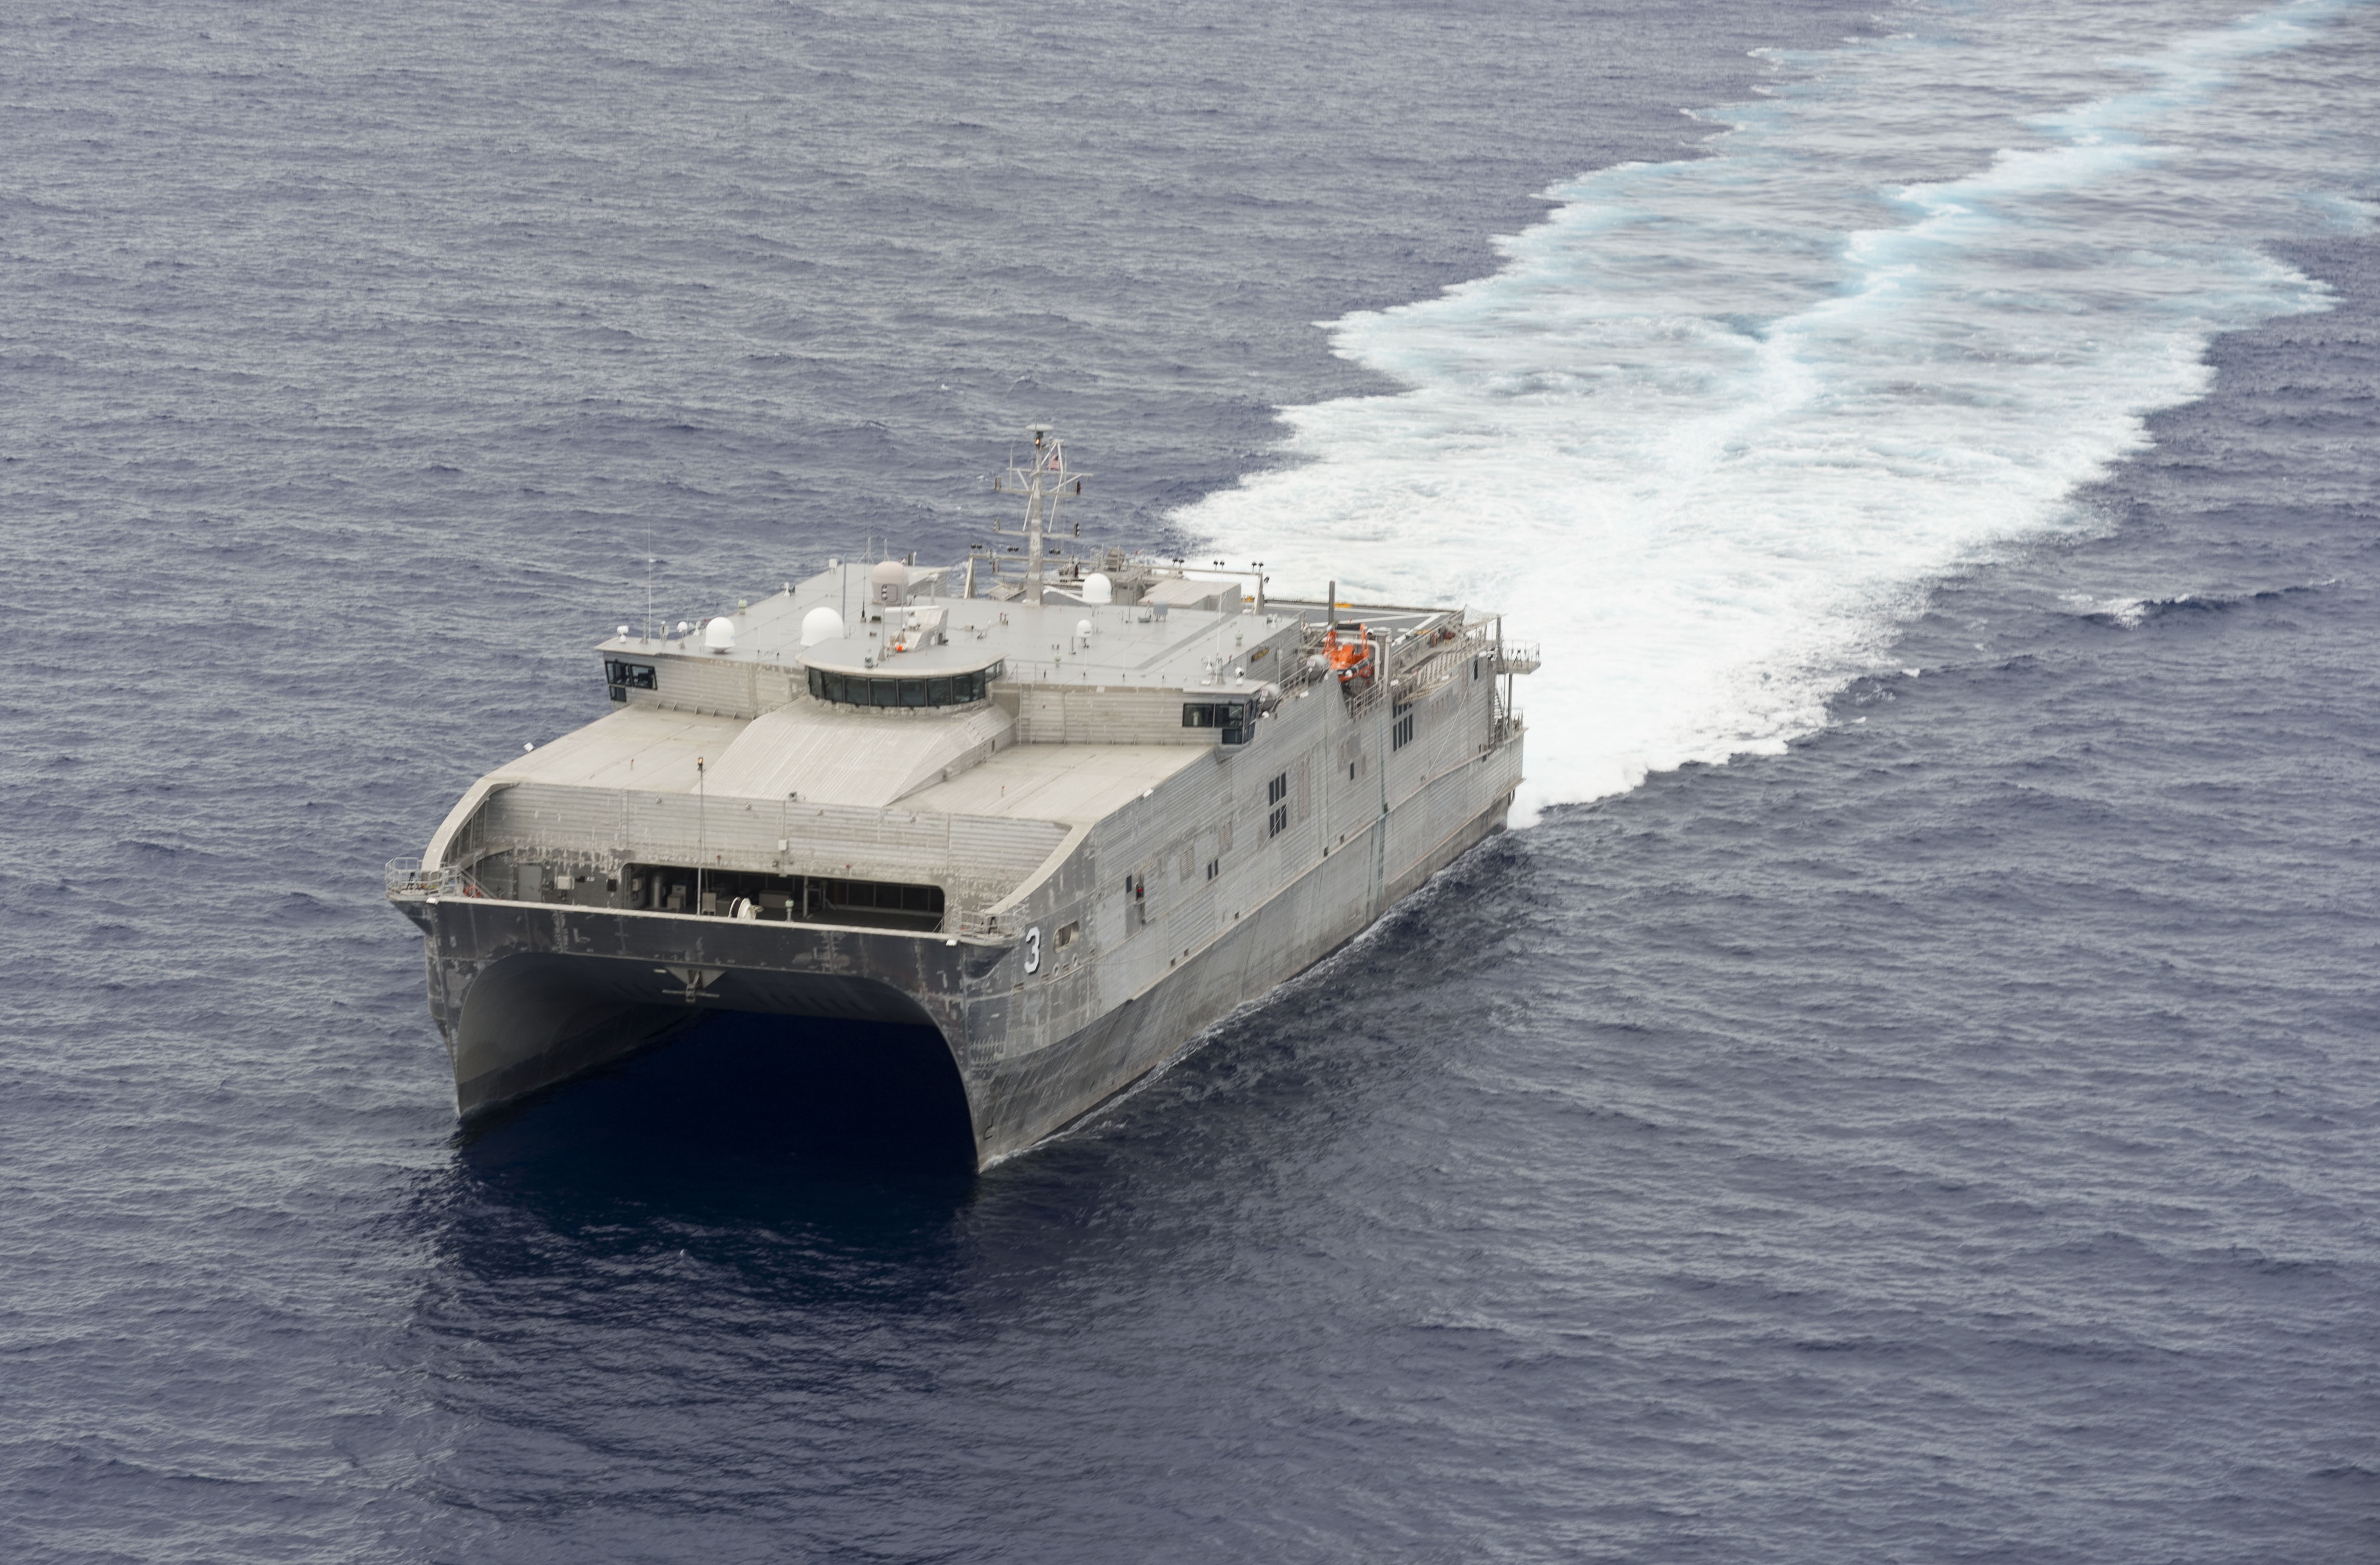 Tàu vận tải quân sự USNS Millinocket của hải quân Mỹ được triển khai tham gia cuộc tập trận chống hải tặc với 6 nước ASEAN đang diễn ra trên Biển Đông - Ảnh: US Navy